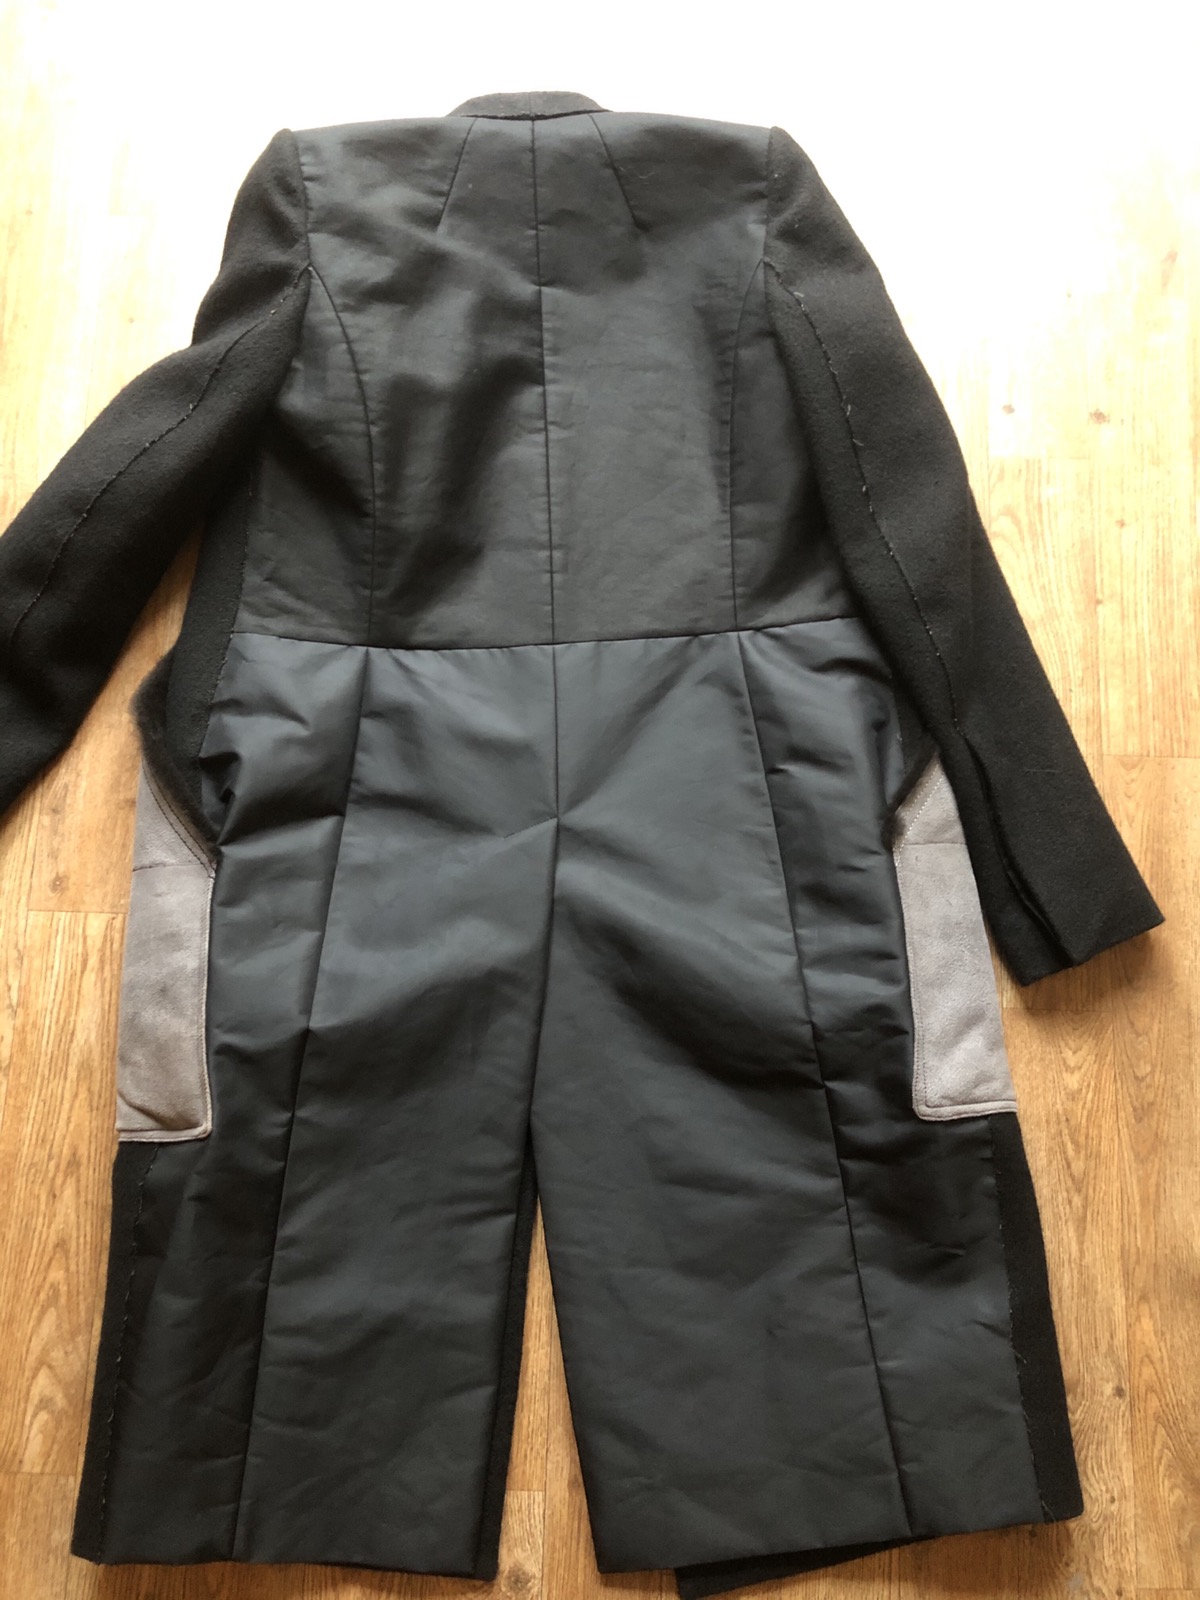 Museaum coat size 44 wmns - 2